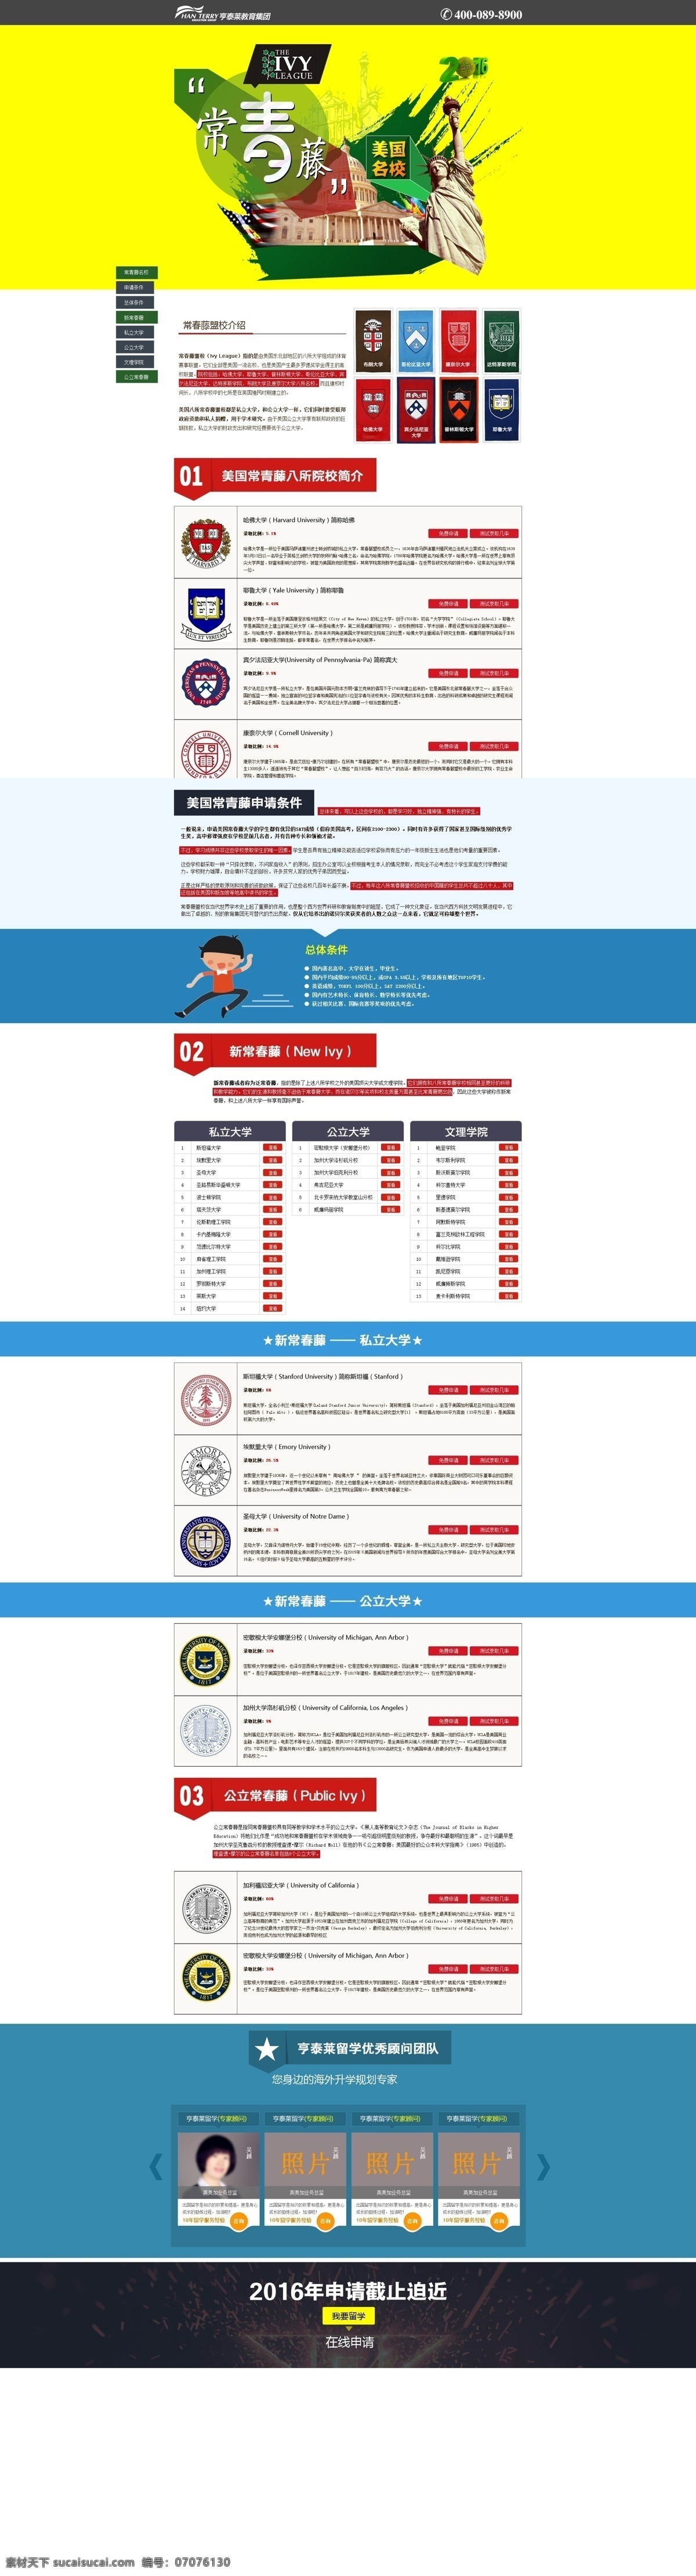 美国 常春藤 名校 网页 专题 网页专题 八大名校 网页设计 web 界面设计 中文模板